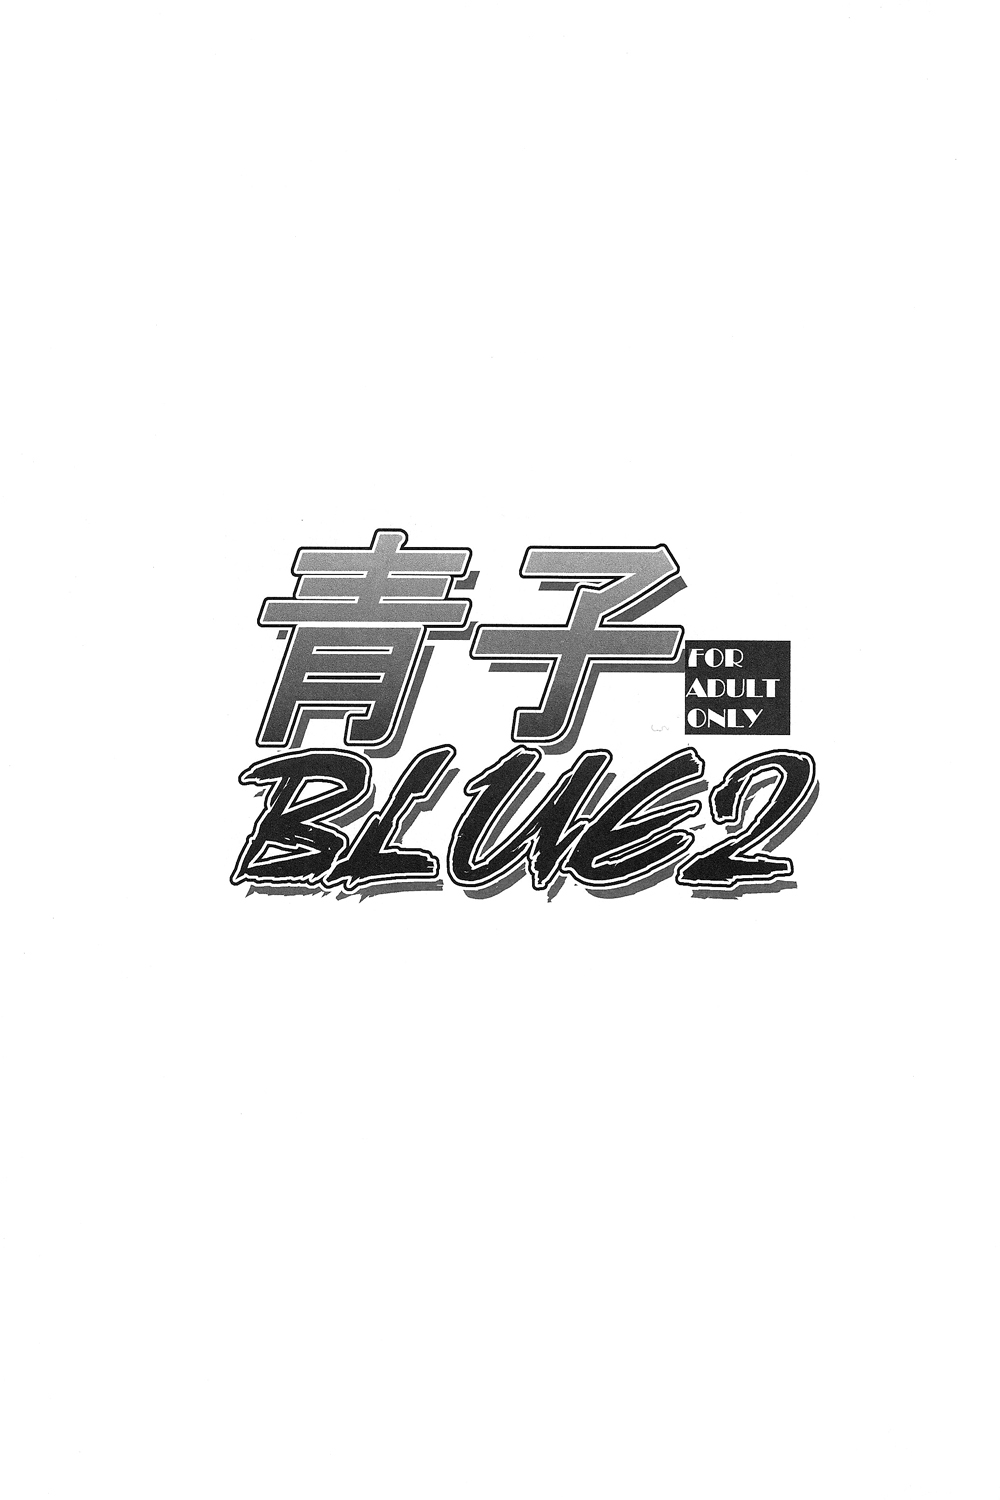 (COMIC1☆7) [Jyouren Kishidan (Kiasa, Wayanajin)] Aoko BLUE2 (Mahou Tsukai no Yoru) (COMIC1☆7) [ジョウ・レン騎士団 (kiasa, ワヤナジン)] 青子BLUE2 (魔法使いの夜)